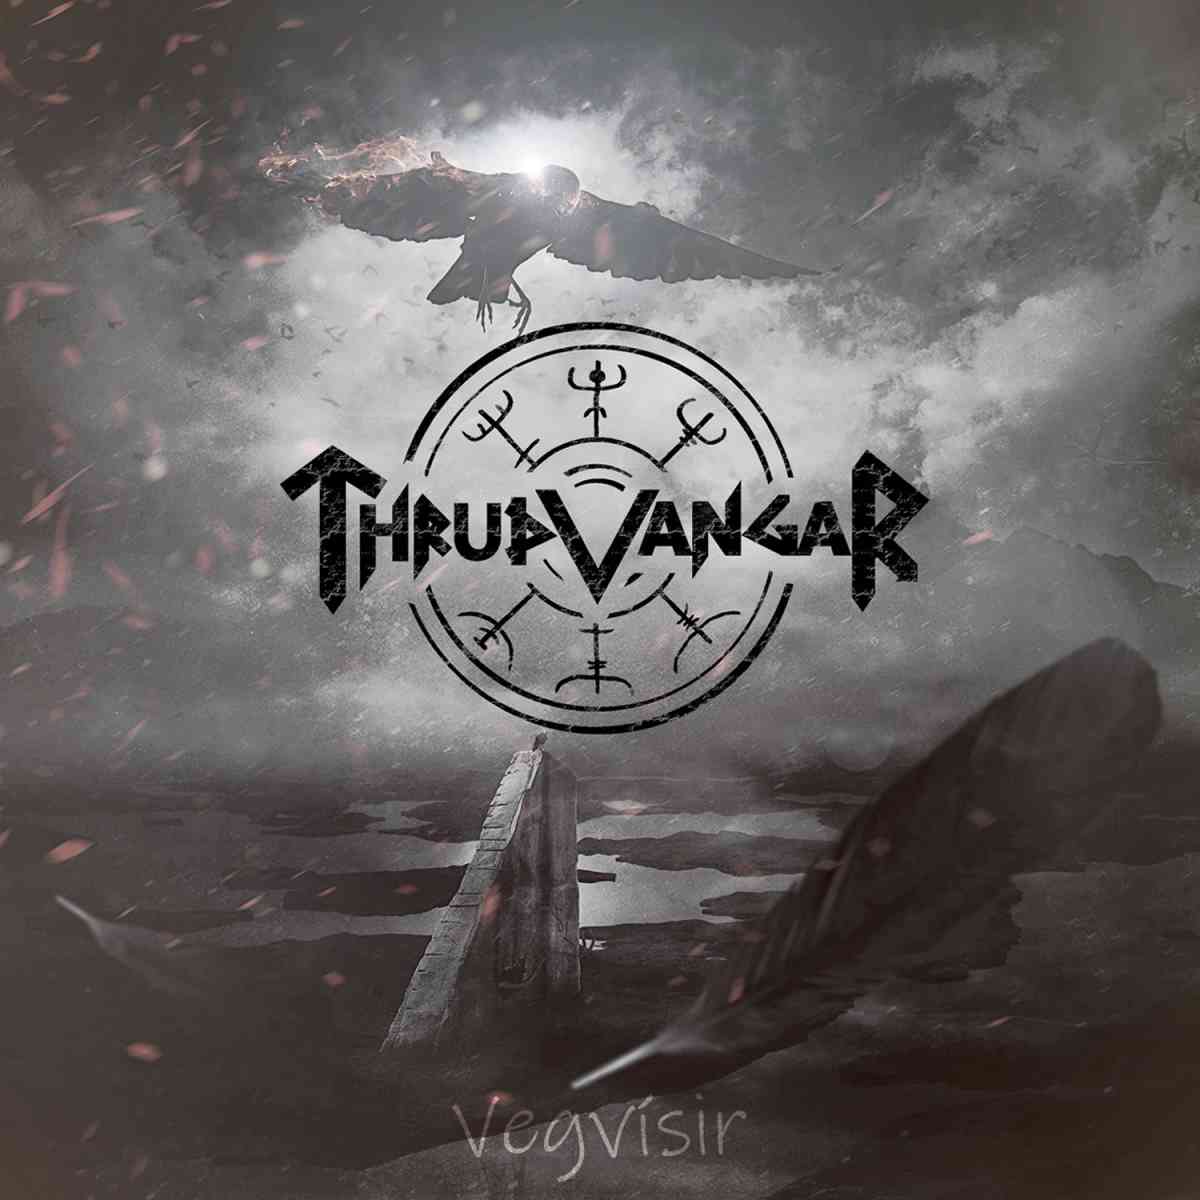 THRUDVANGAR - Vegvisir - album cover